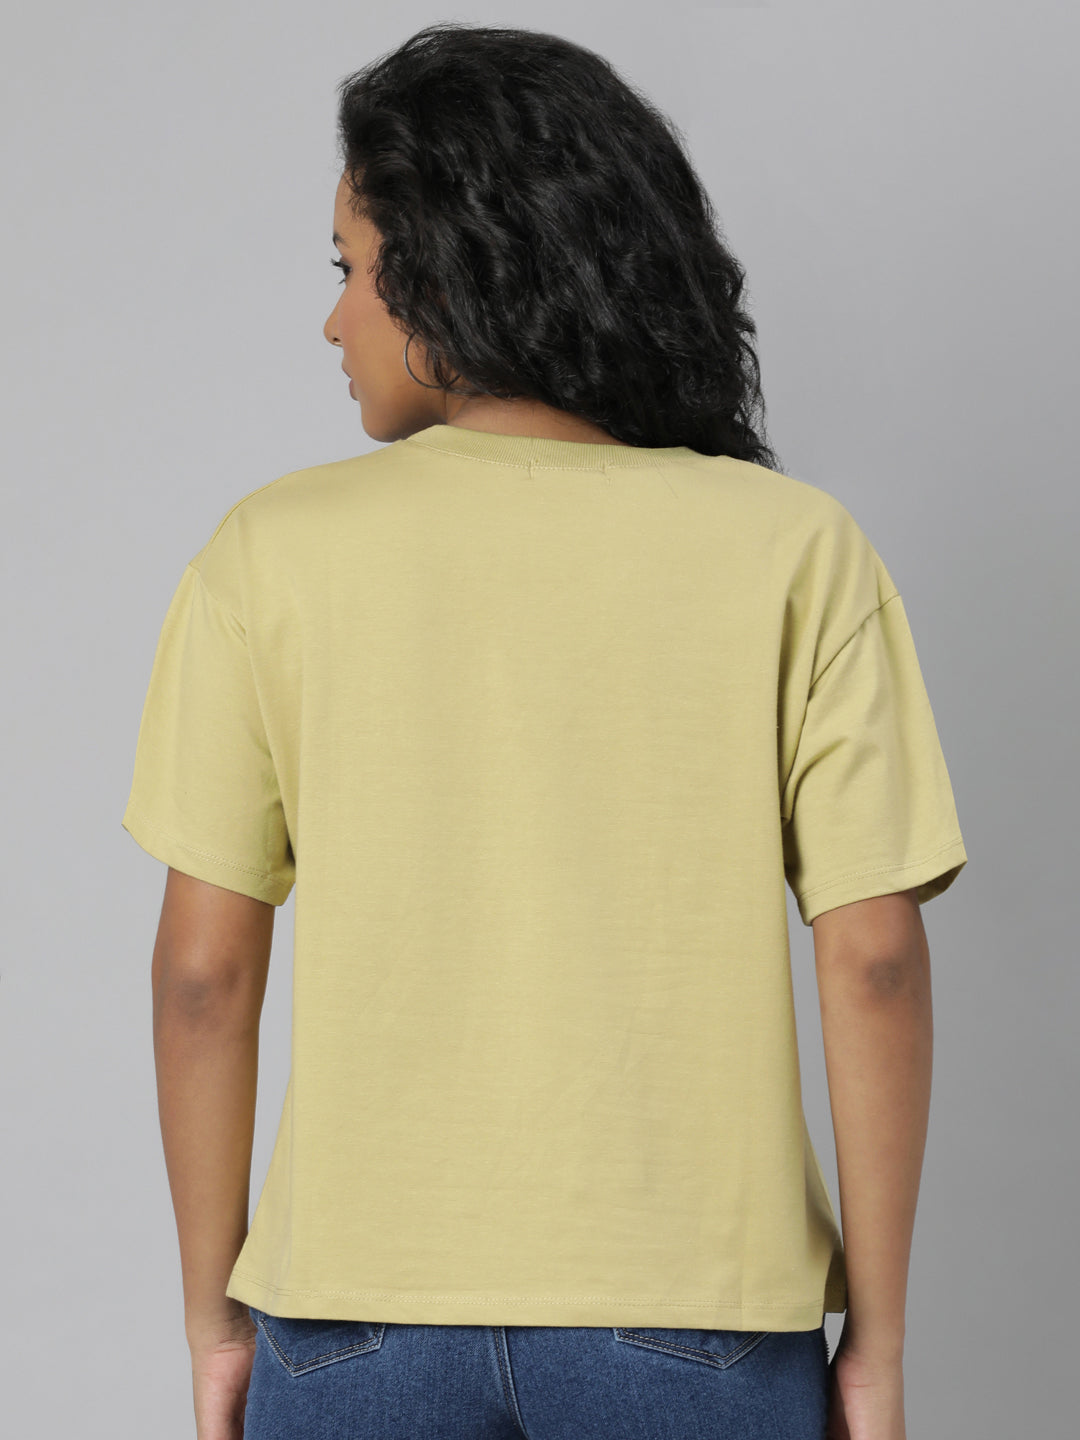 Women Solid Mustard T Shirt